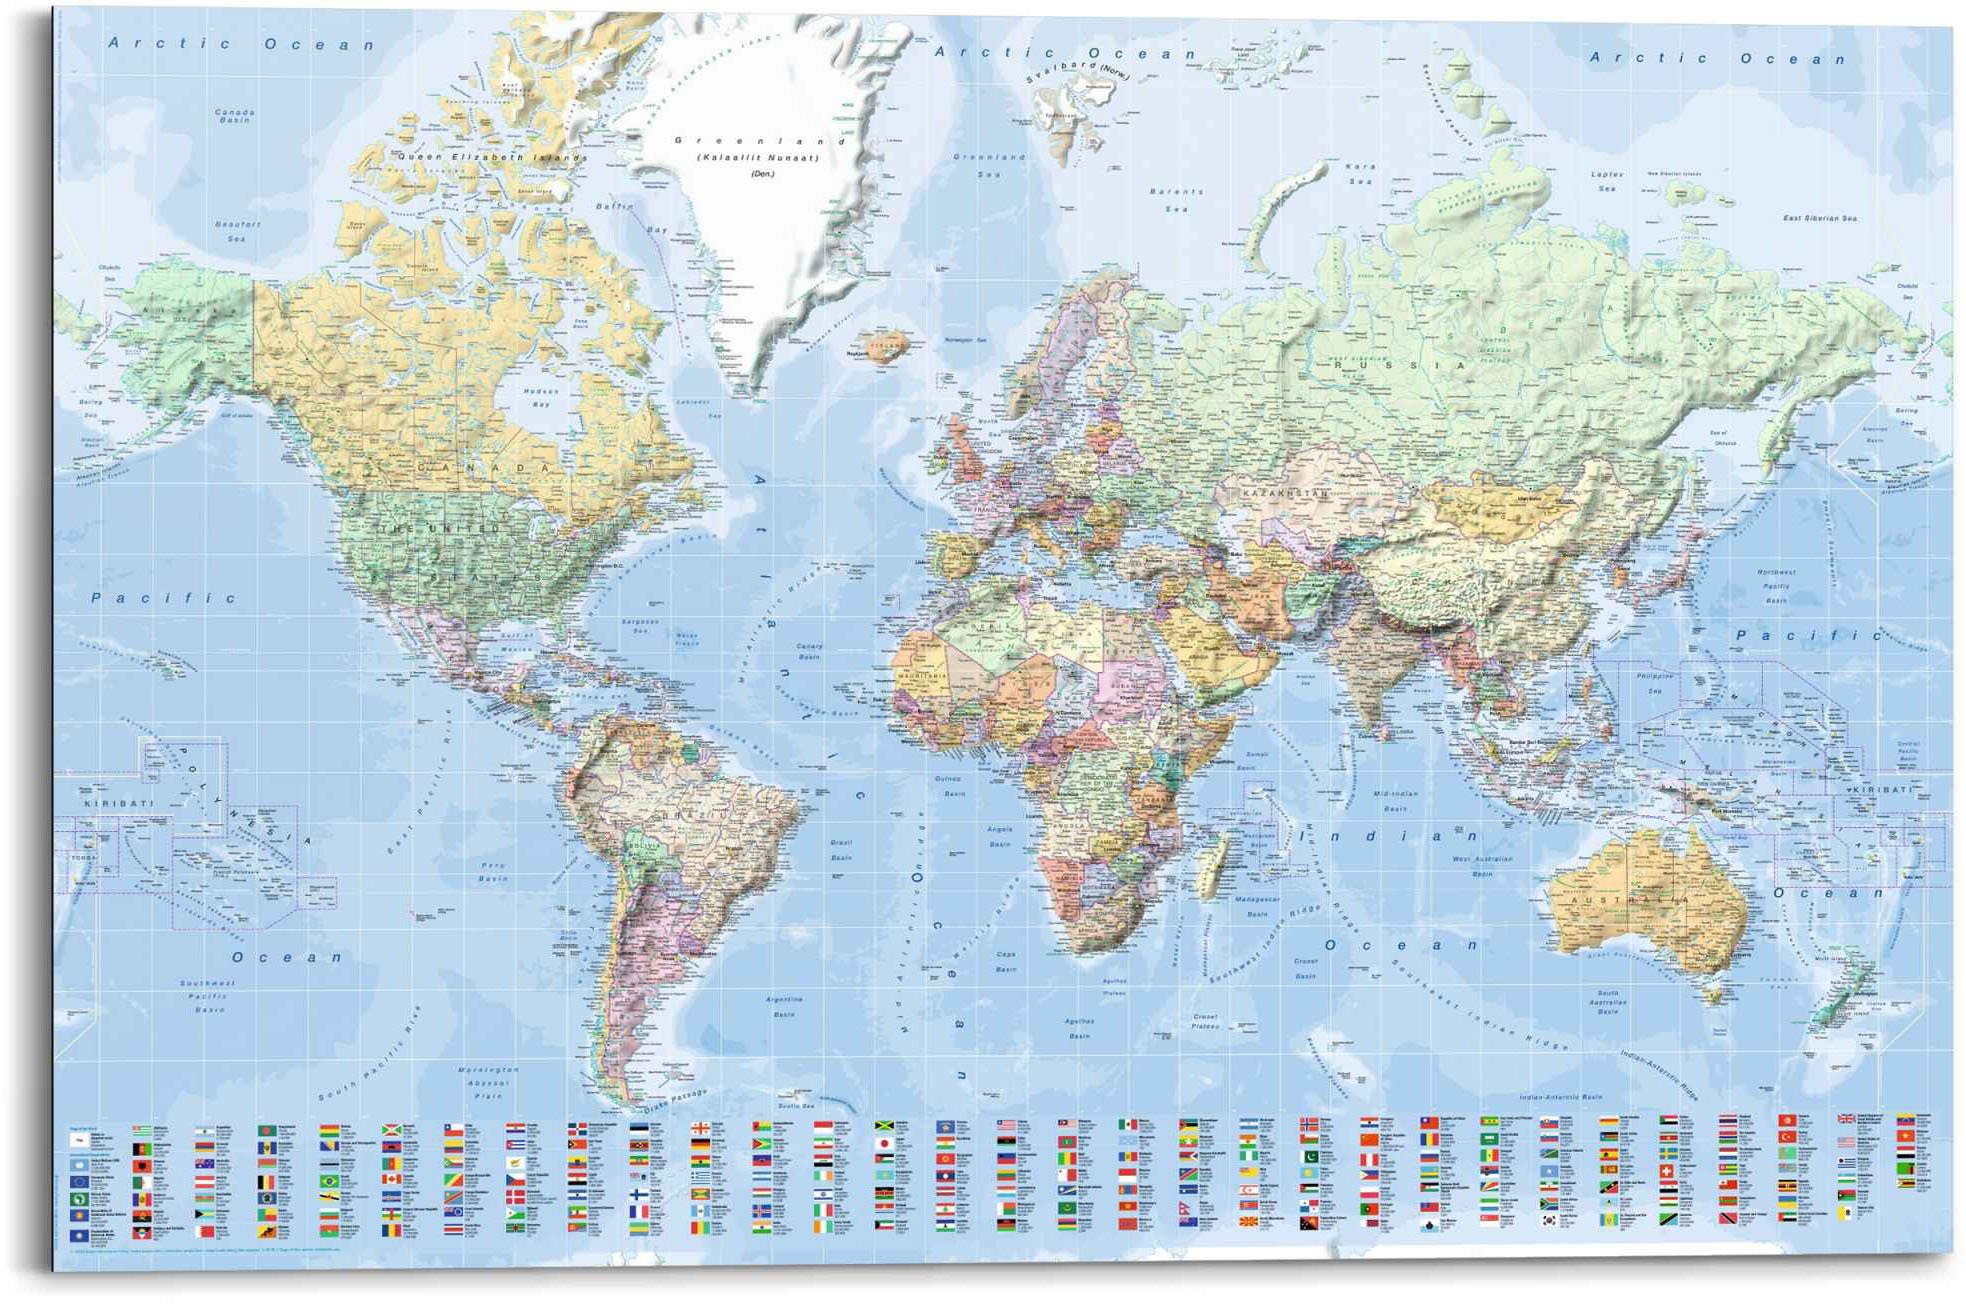 Reinders! Wandbild Wandbild Weltkarte Fahnen - Englisch, Weltkarte (1 St)